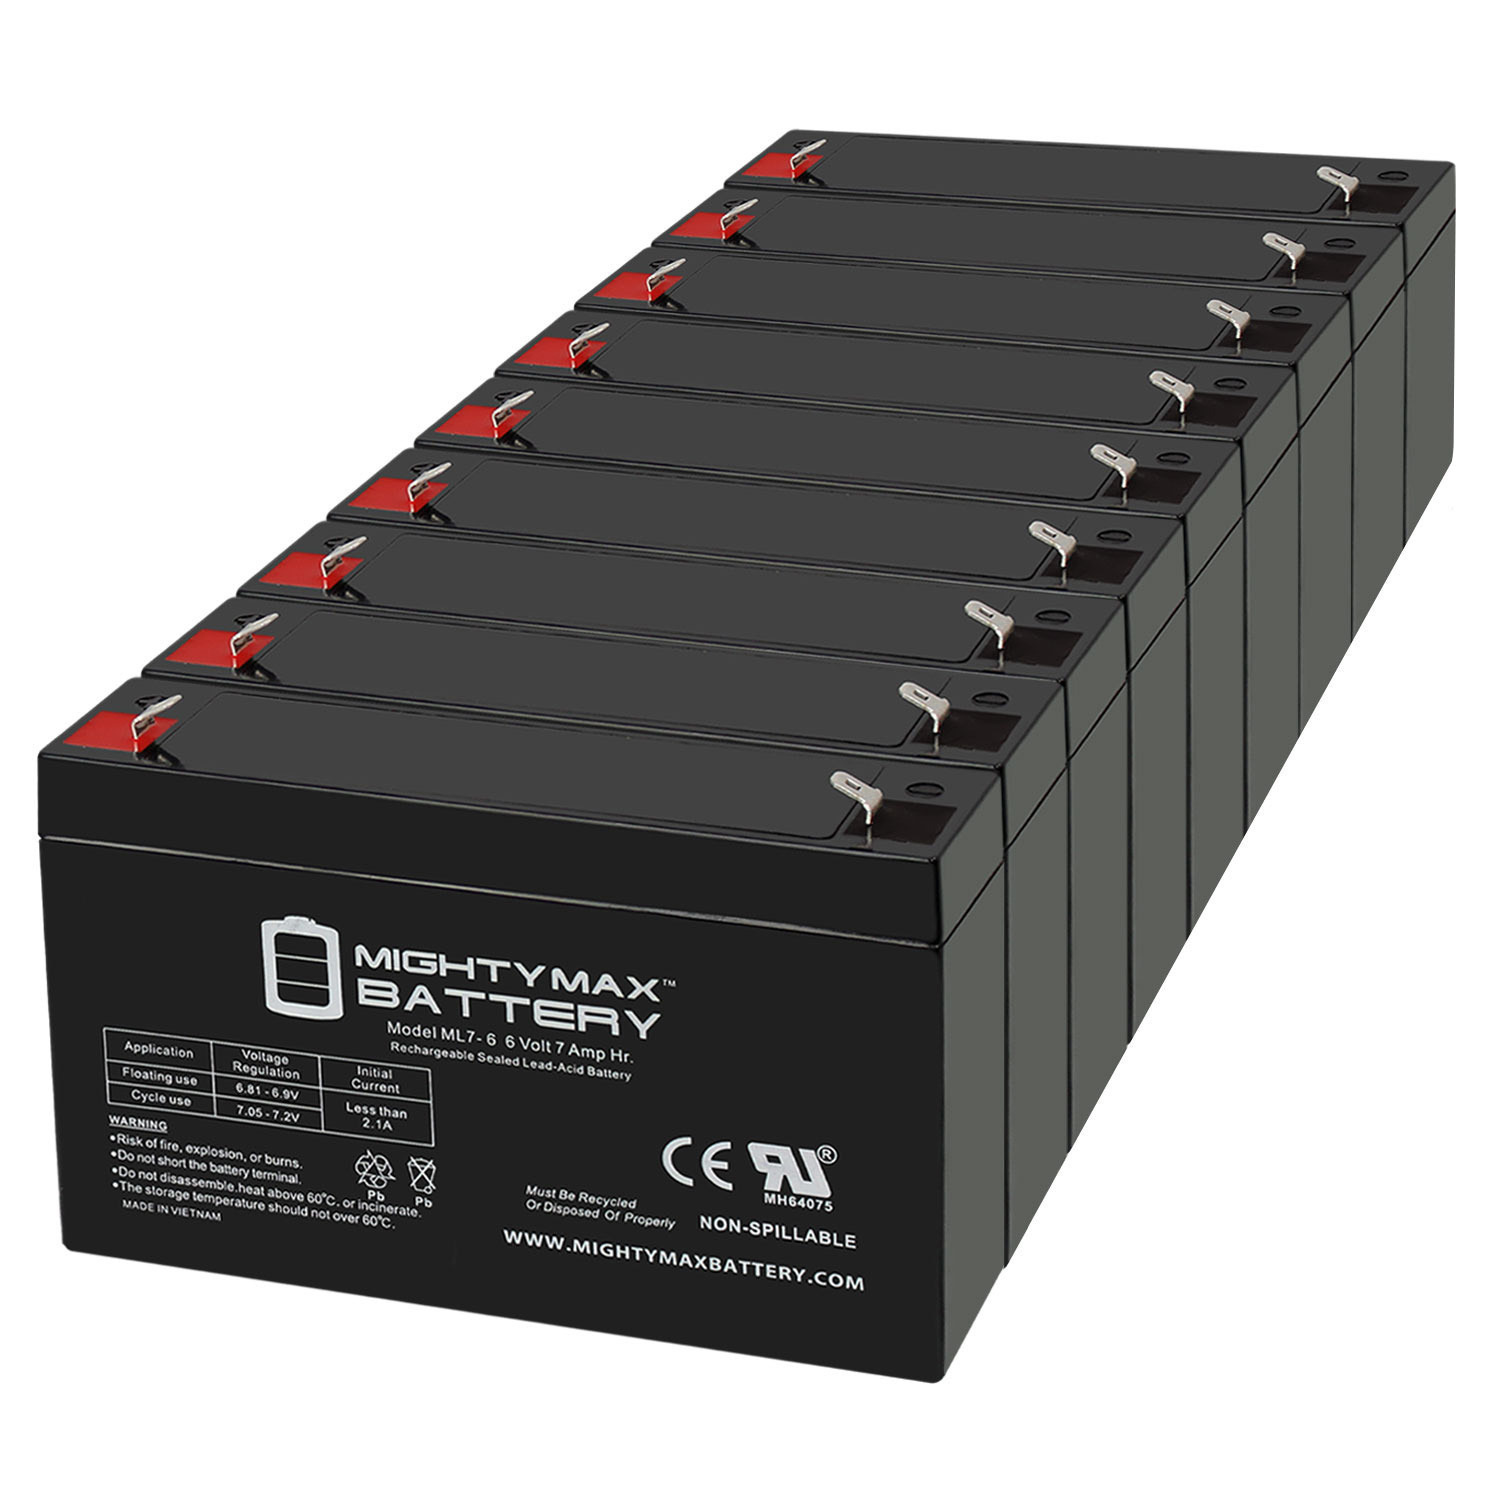 6V 7Ah SLA Replacement Battery for Kid Trax Avigo Quad SG067T1 - 9 Pack